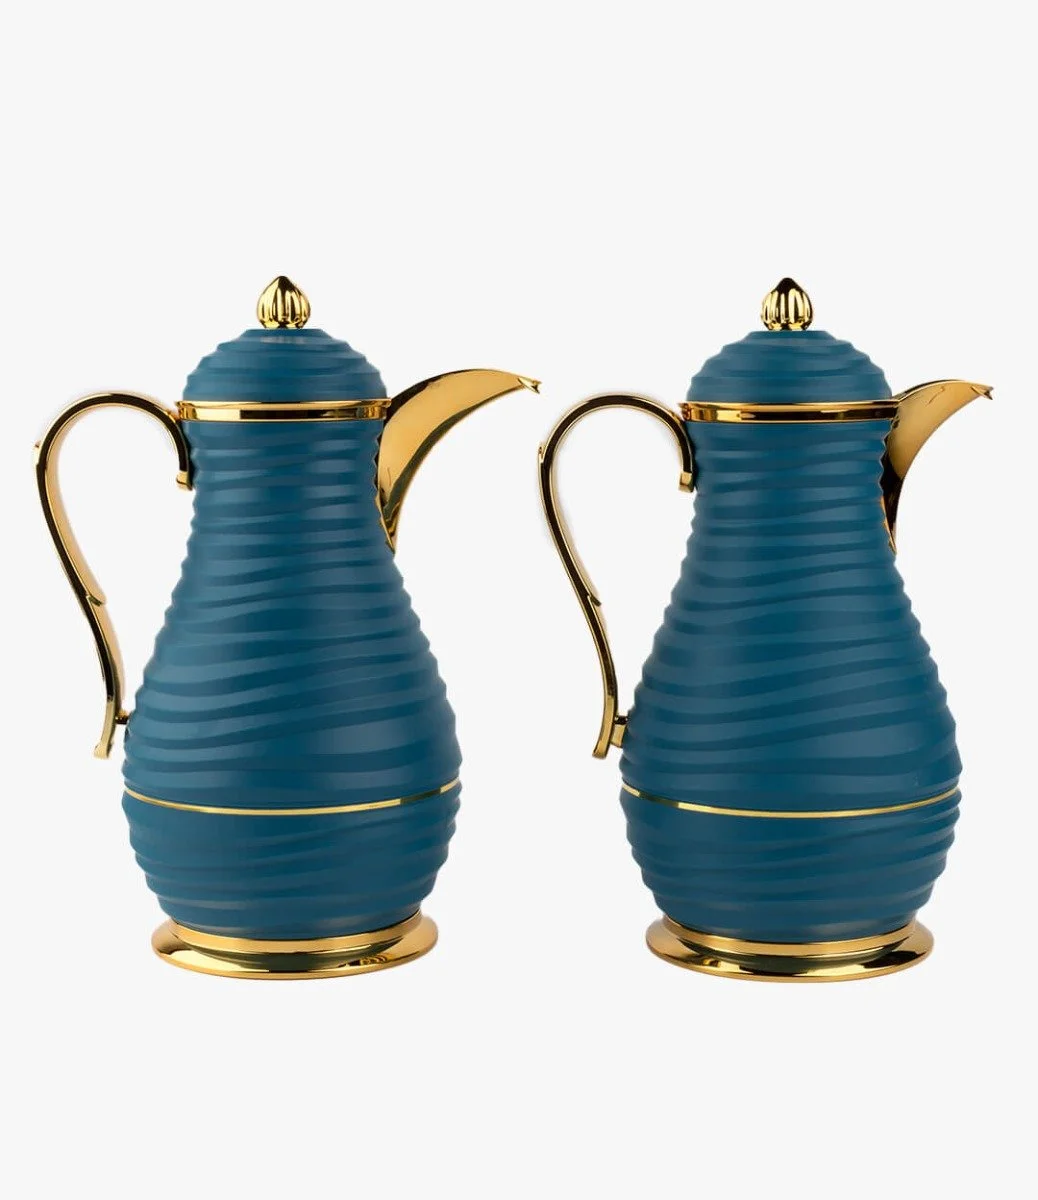 أزرق - دلتين للشاي والقهوة بتصميم أنيق من هارموني